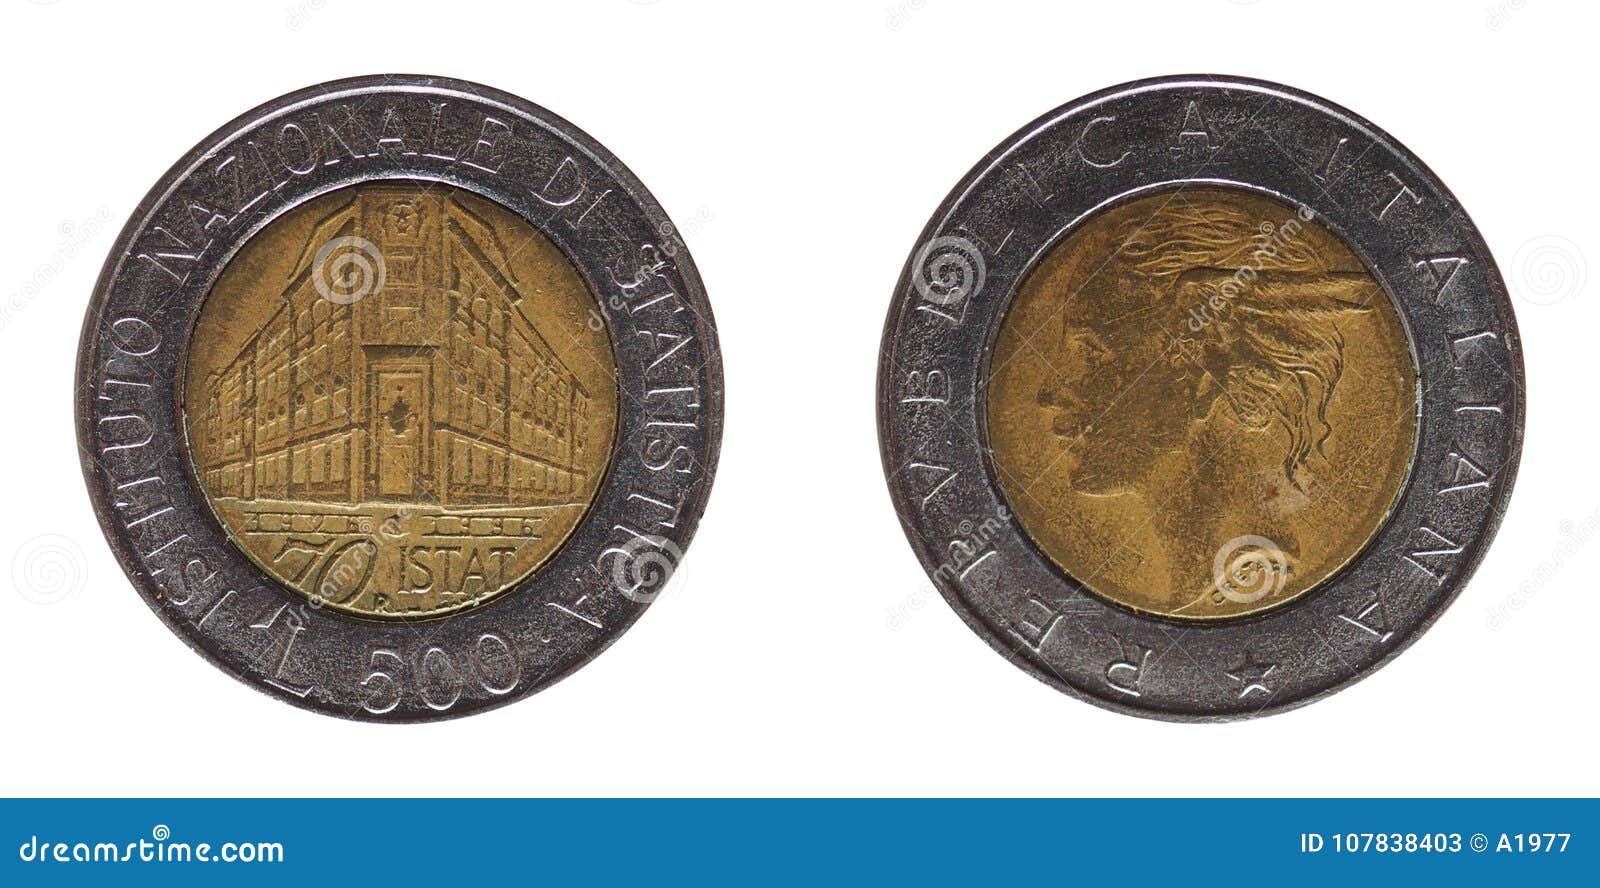 500 liras coin, italy